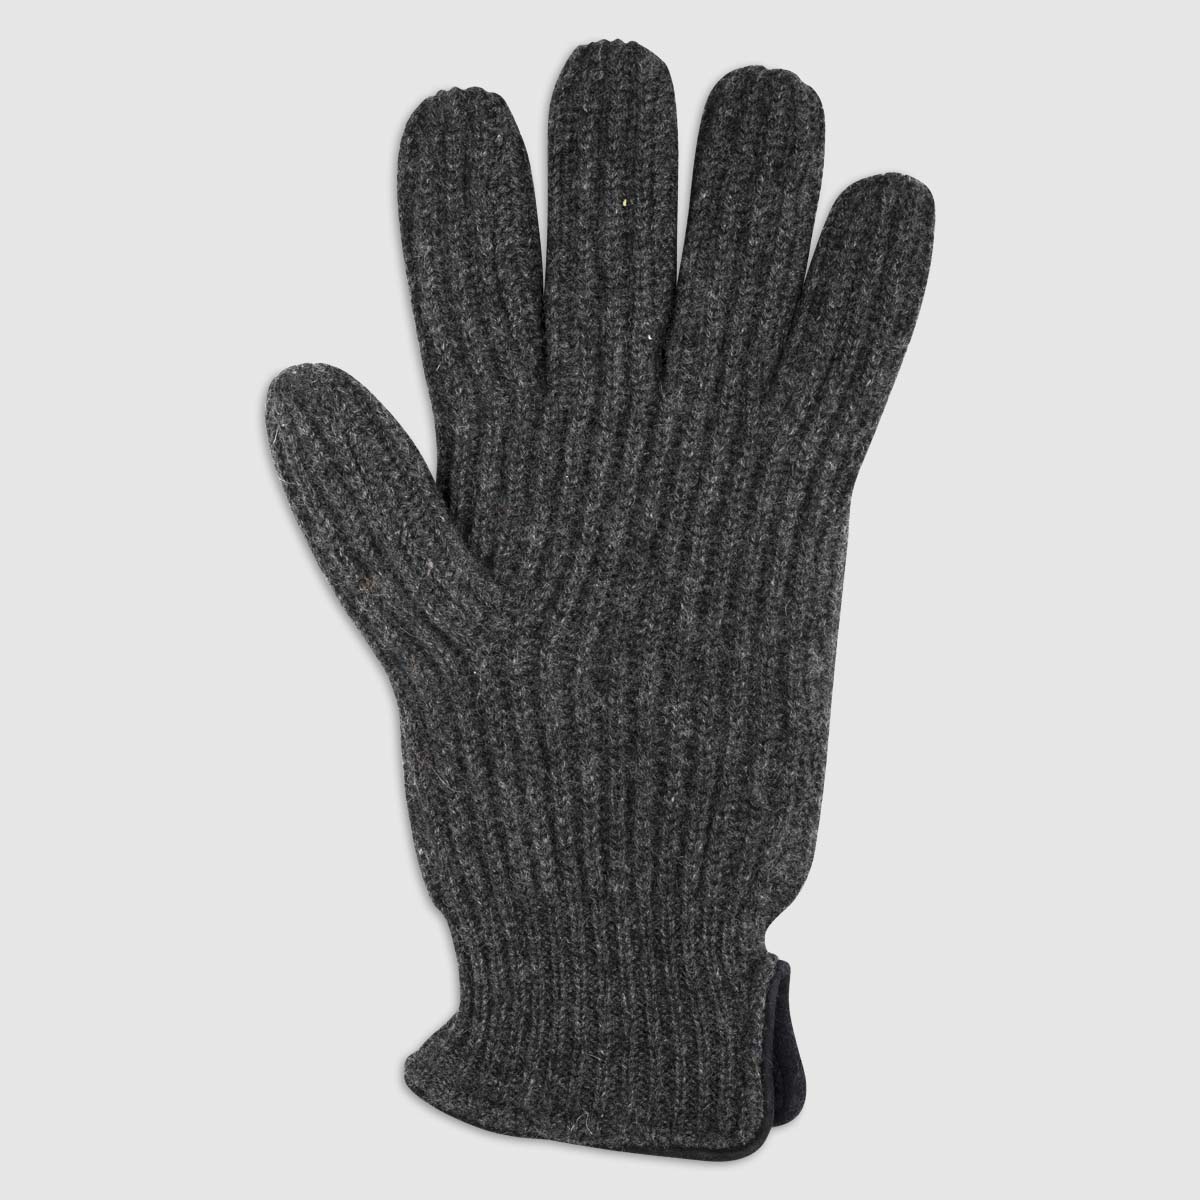 Double Layered Cashmere Glove in Antracite Alpo Guanti on sale 2022 2